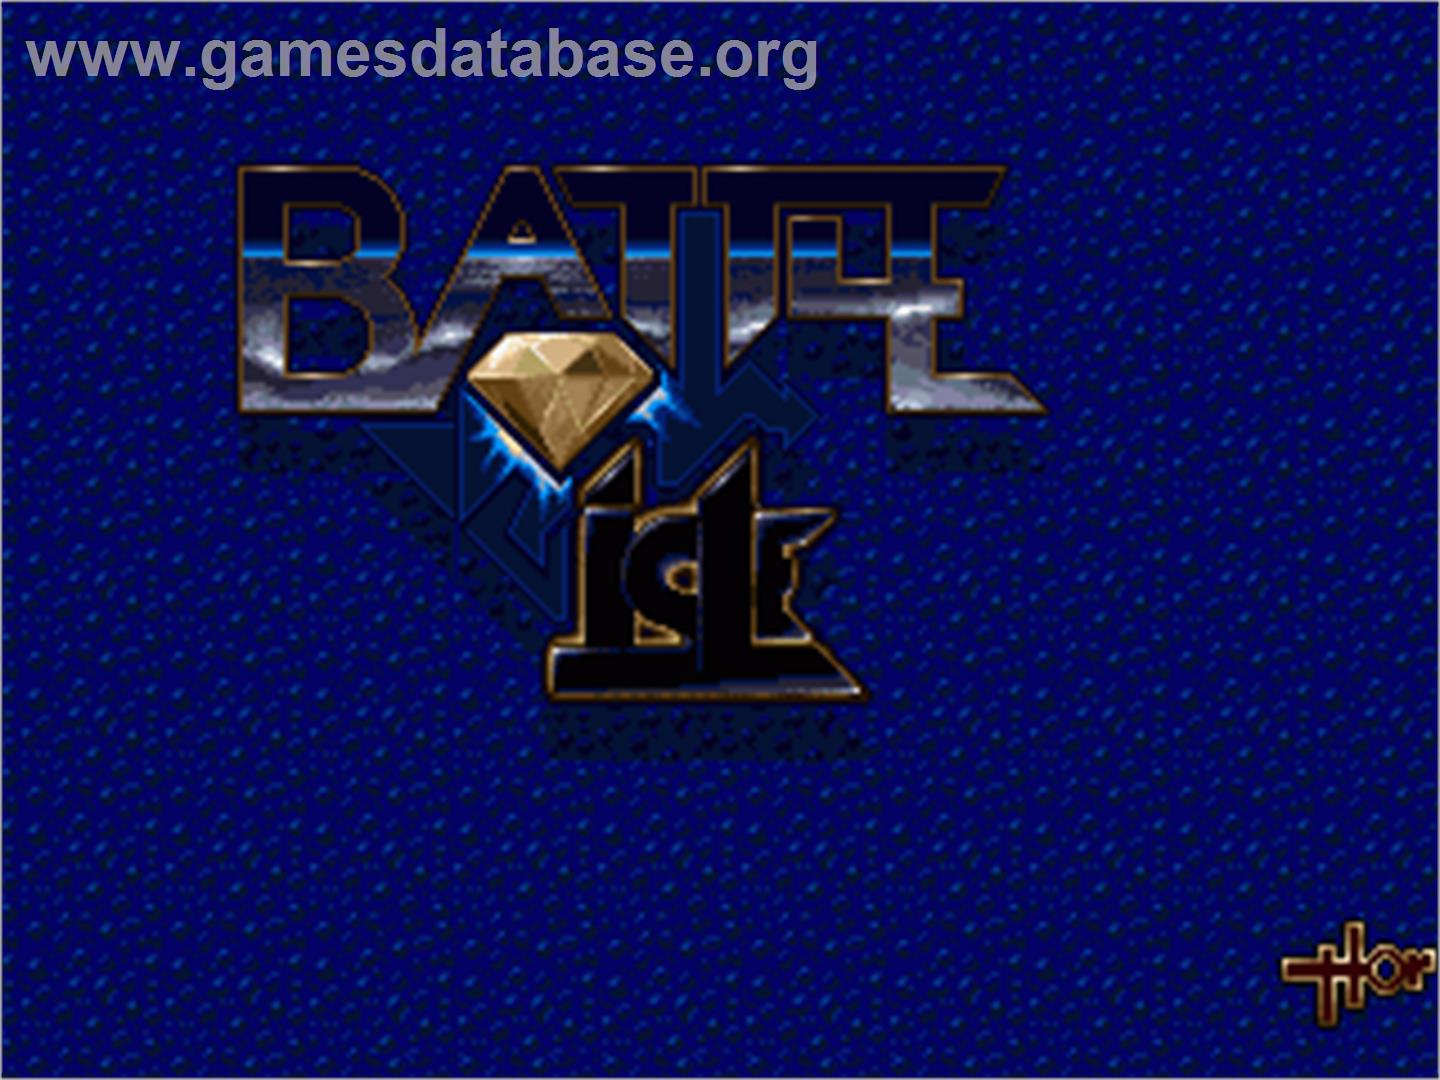 Battle Isle - Commodore Amiga - Artwork - Title Screen